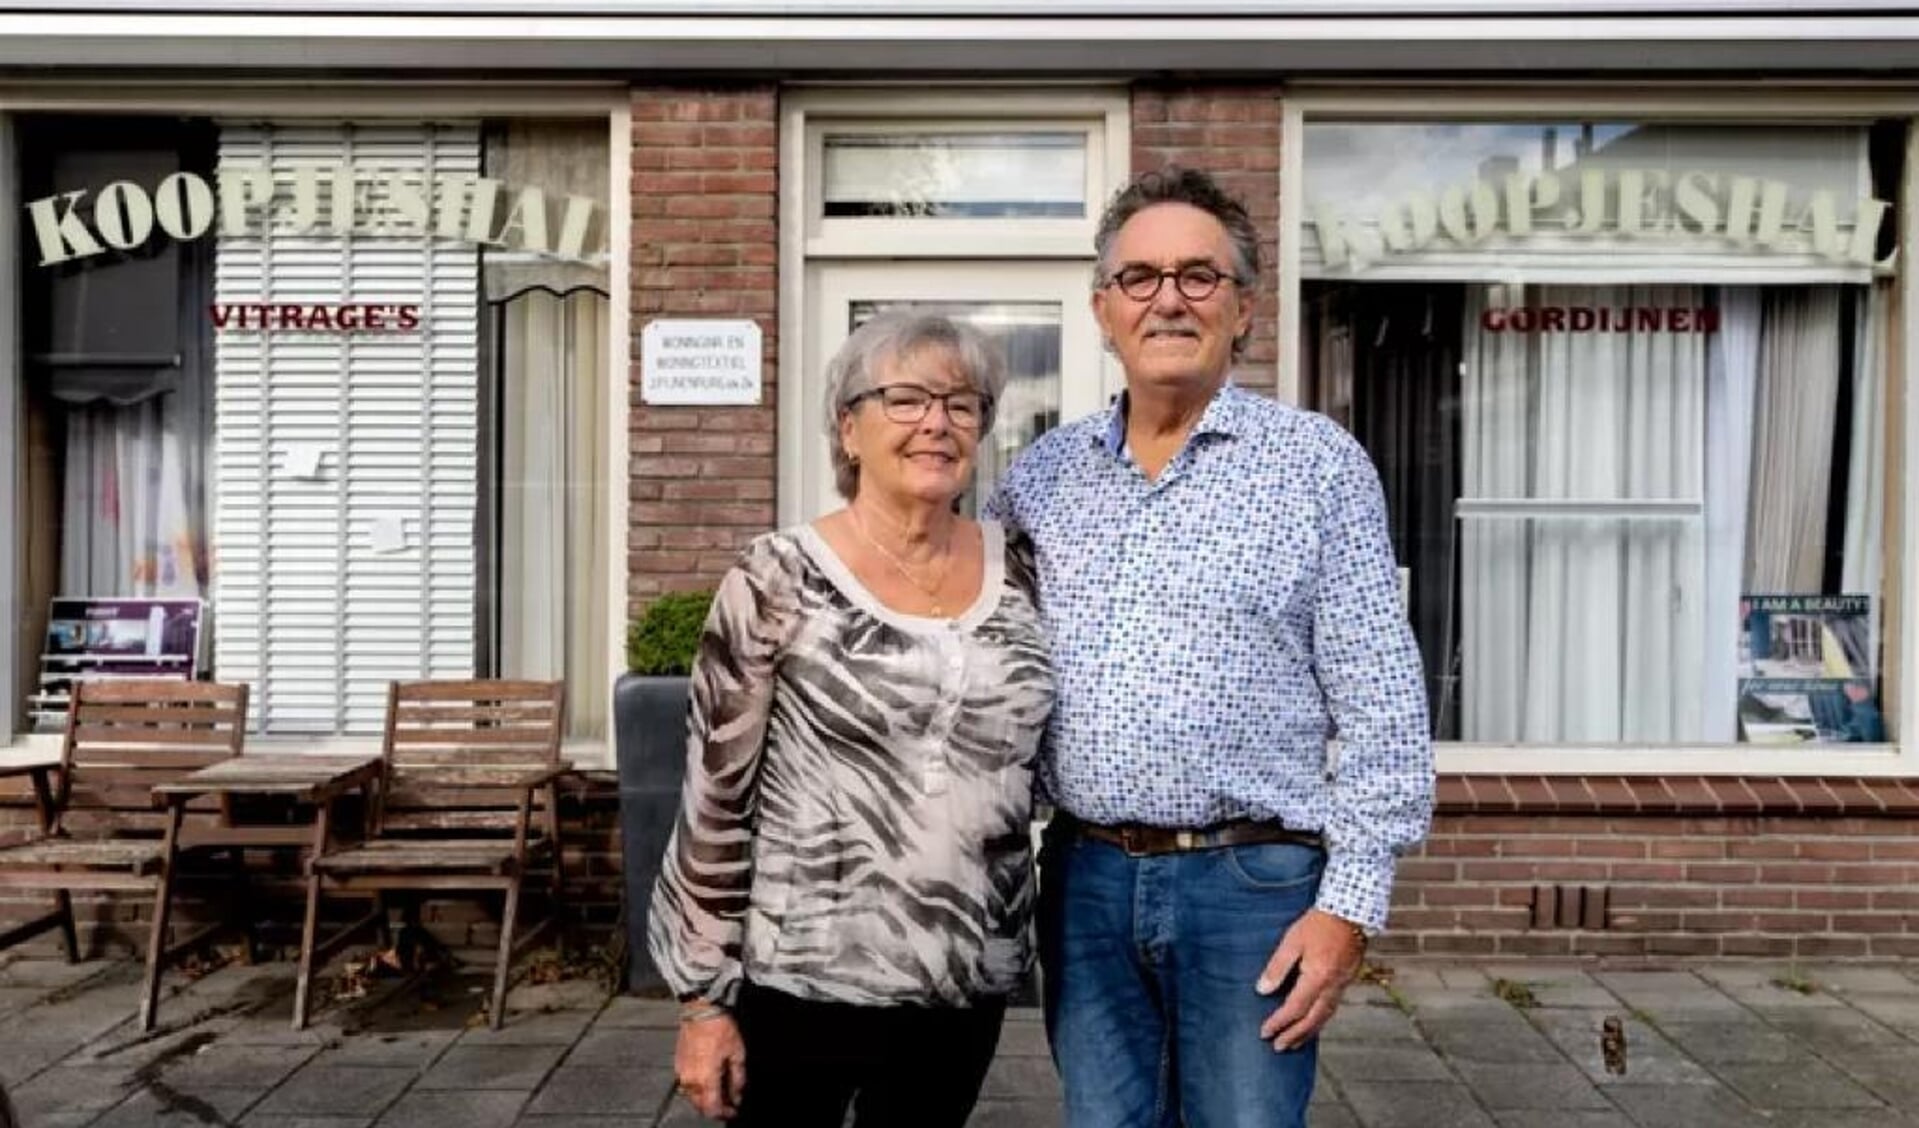 Joop en Jeannette Pijnenburg poseren samen voor de Koopjeshal waarvan de gordijnen binnenkort definitief gesloten worden. Meer dan vijftig jaar heeft de Koopjeshal haar klanten voorzien van goede raambekleding. 